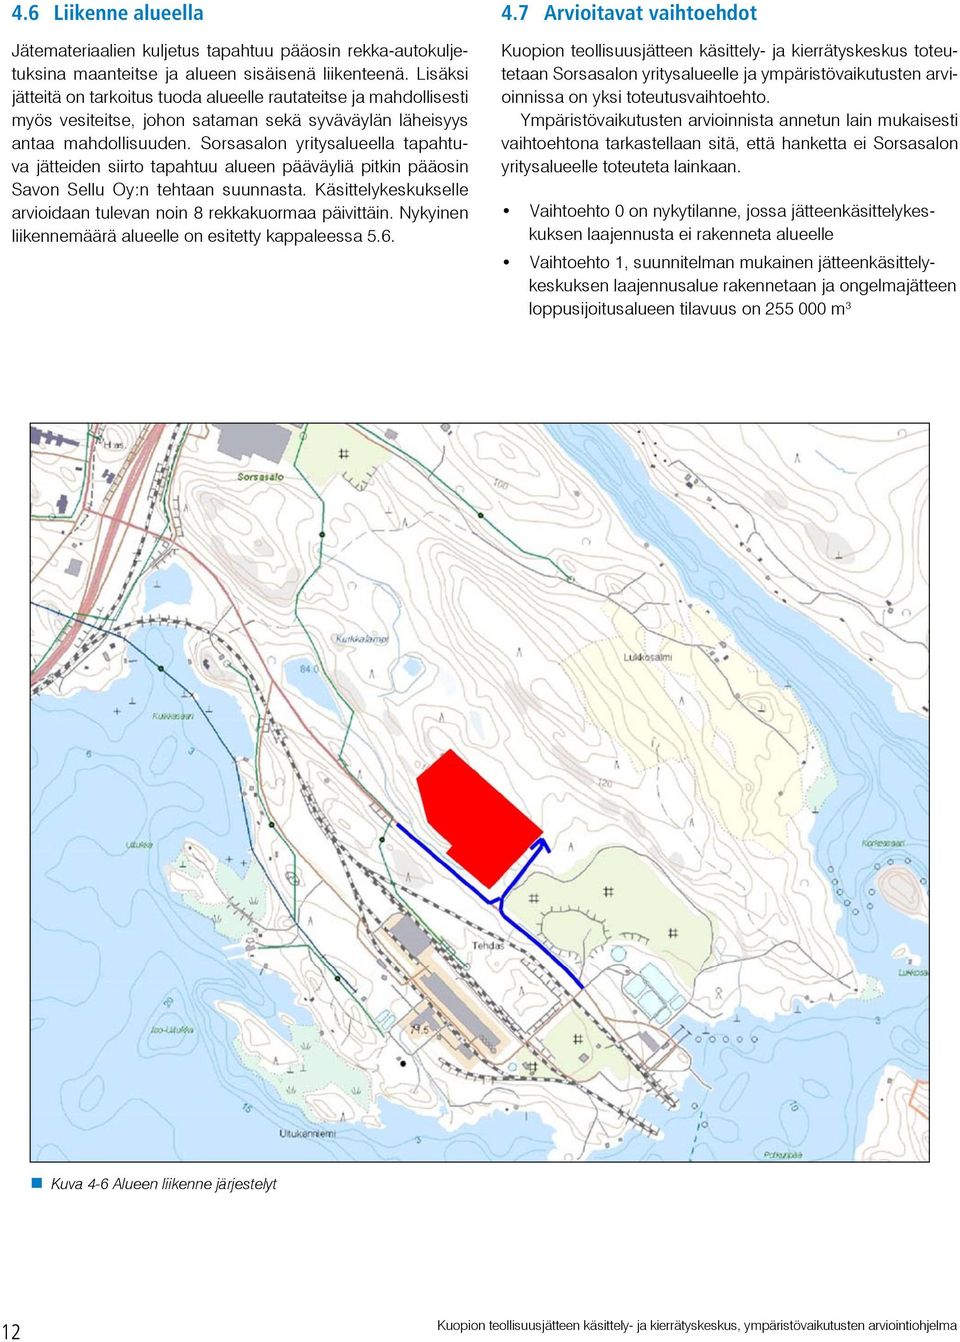 Sorsasalon yritysalueella tapahtuva jätteiden siirto tapahtuu alueen pääväyliä pitkin pääosin Savon Sellu Oy:n tehtaan suunnasta.